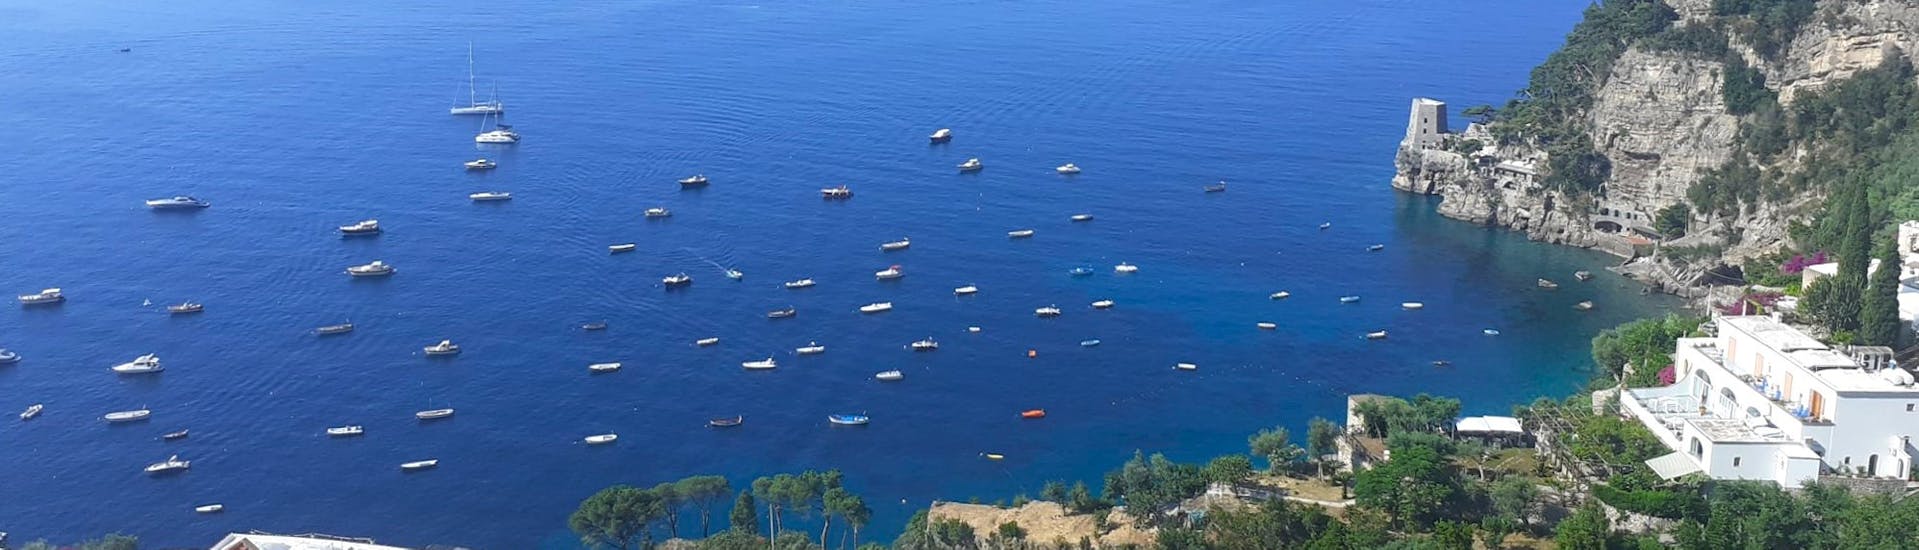 Blick auf die Amalfiküste von oben während der privaten Bootstour von Positano nach Capri - Ganztags